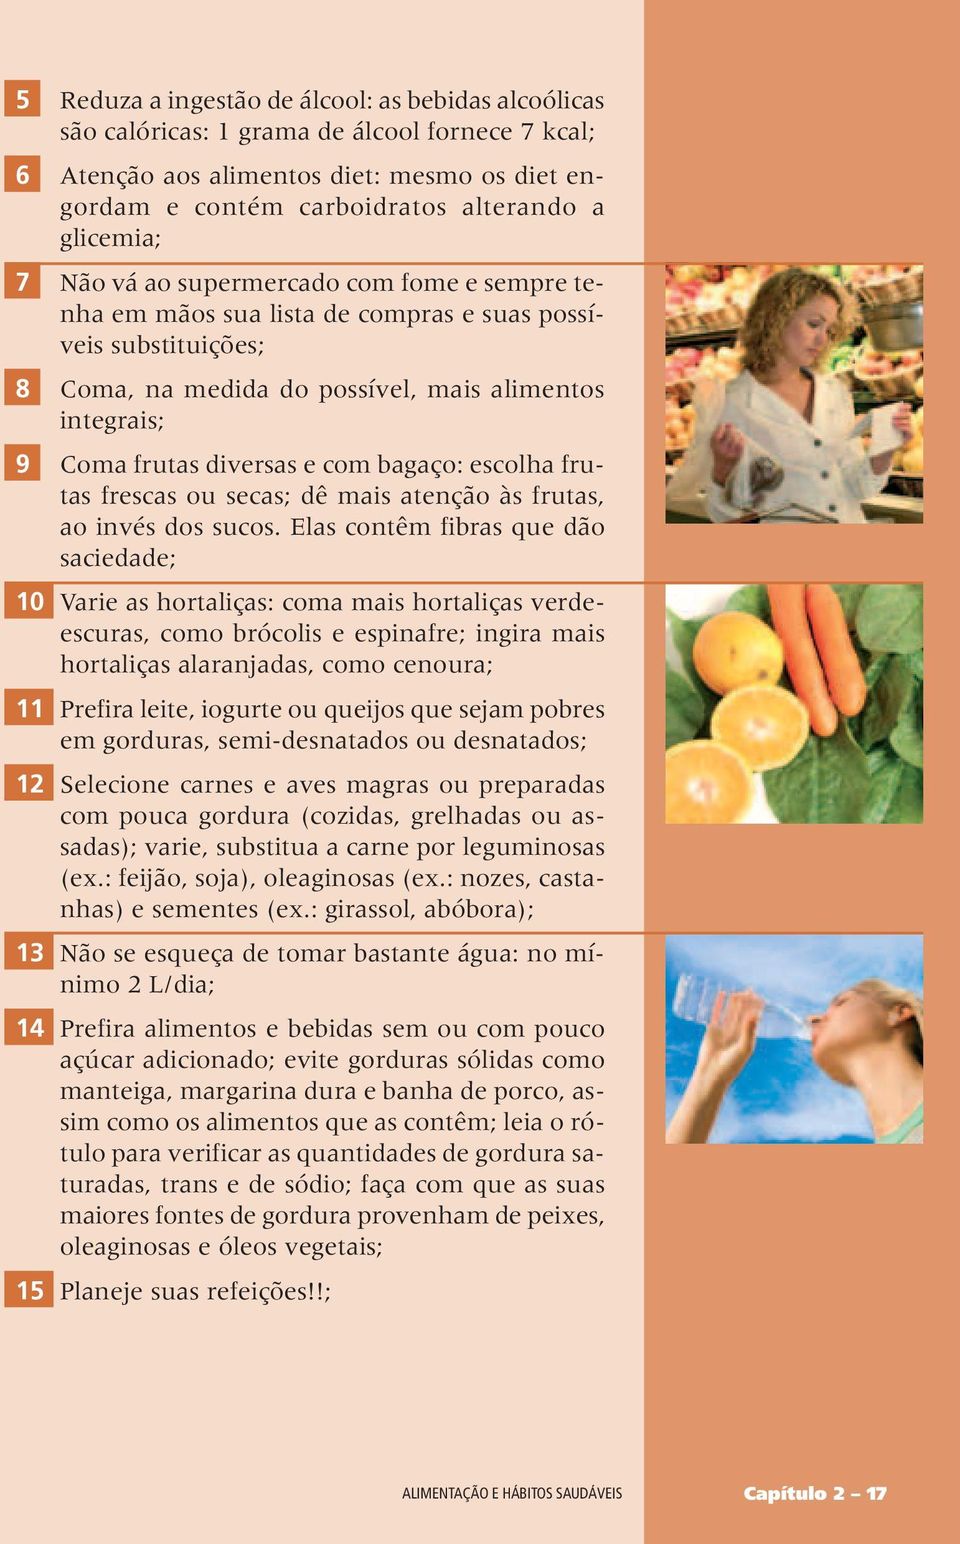 bagaço: escolha frutas frescas ou secas; dê mais atenção às frutas, ao invés dos sucos.